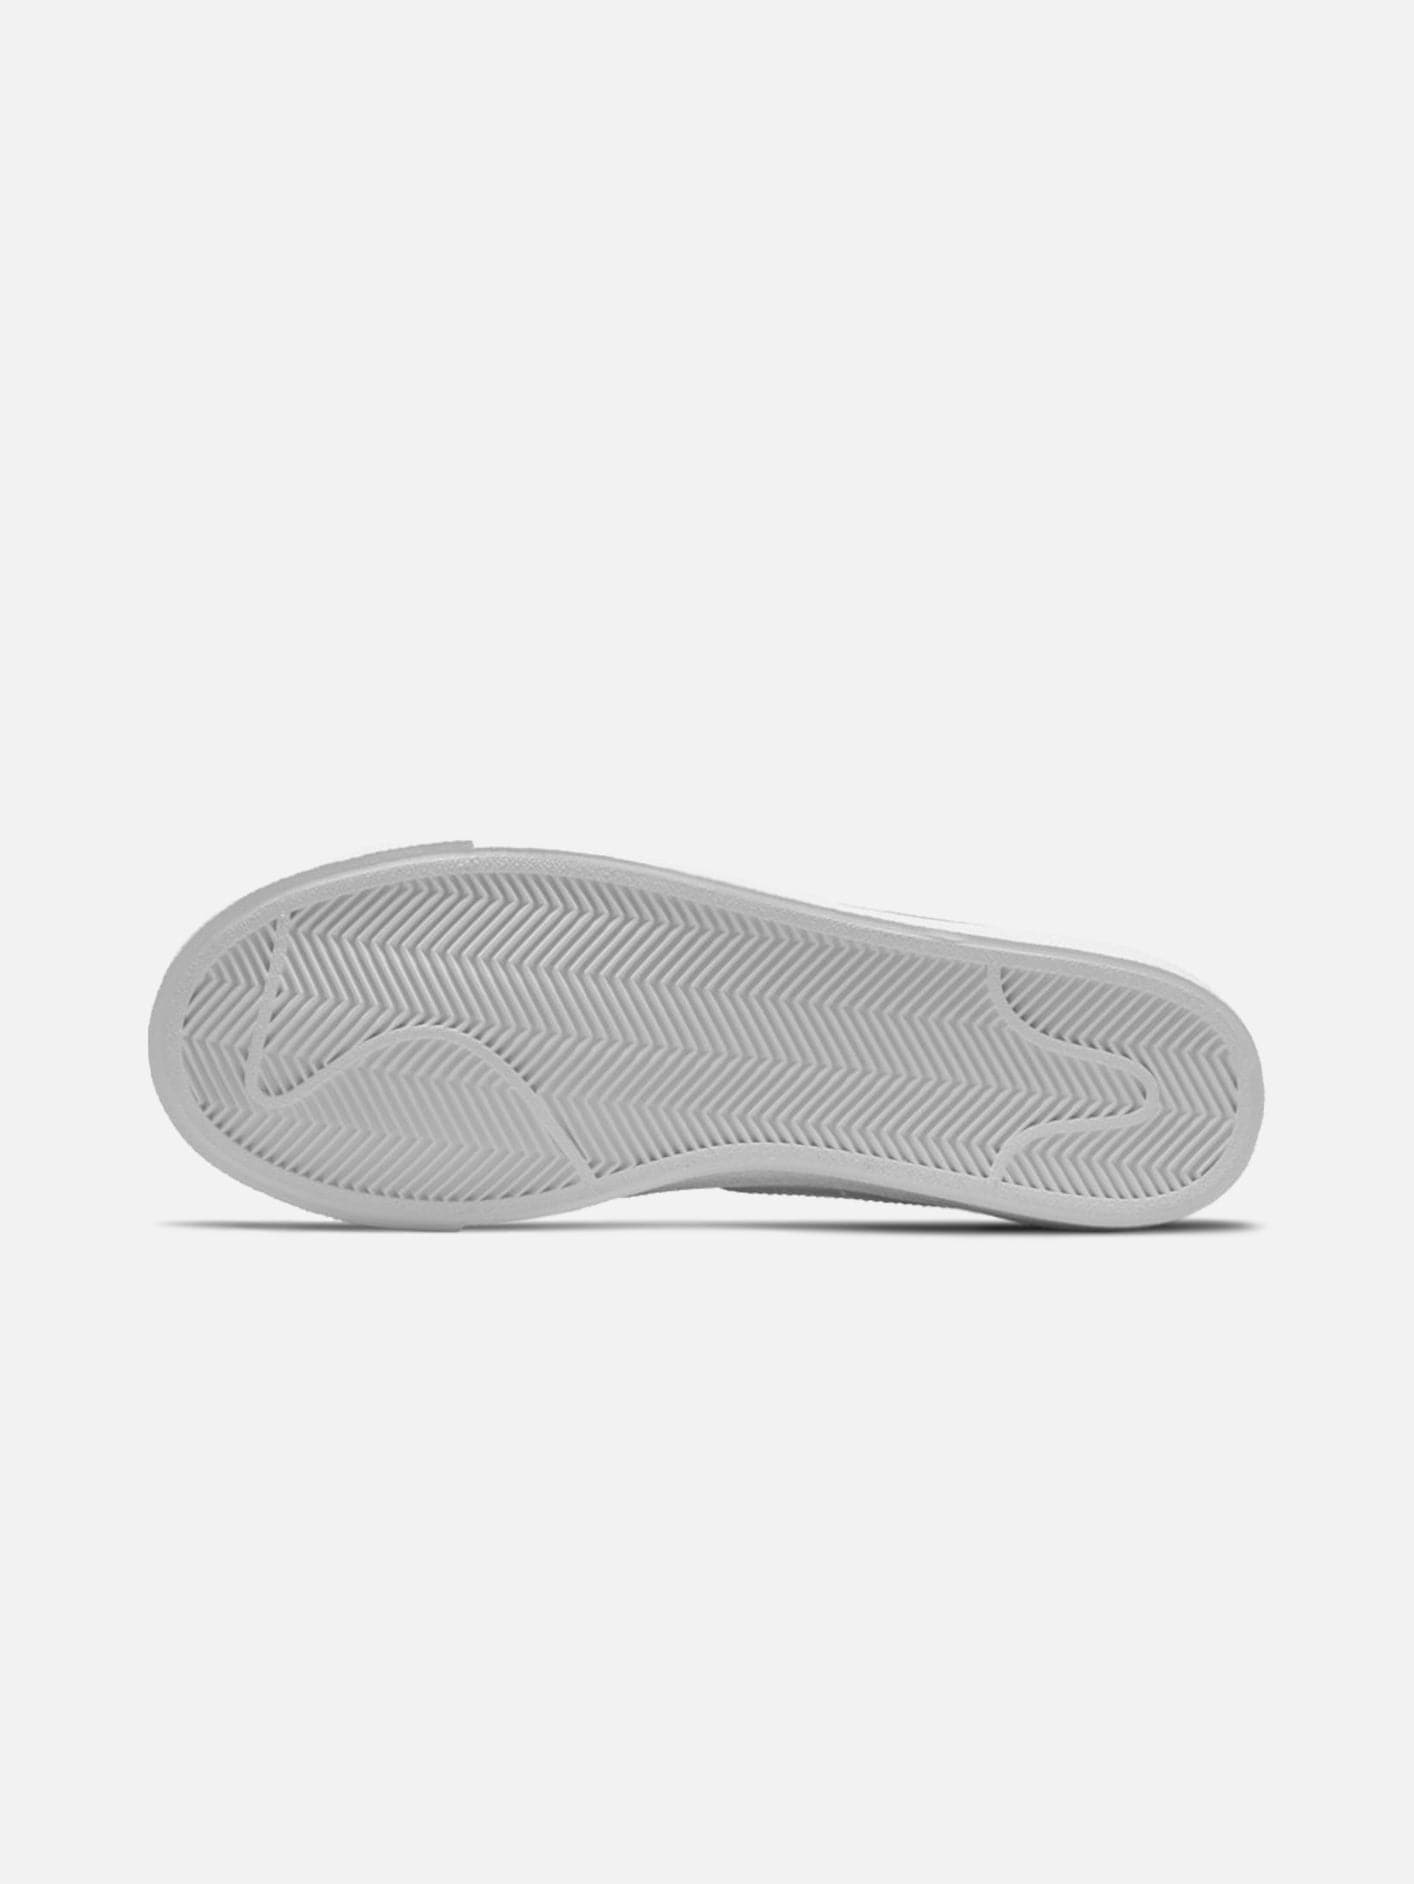 Nike Blazer Low '77 Triple White | SNEAKER shopi go